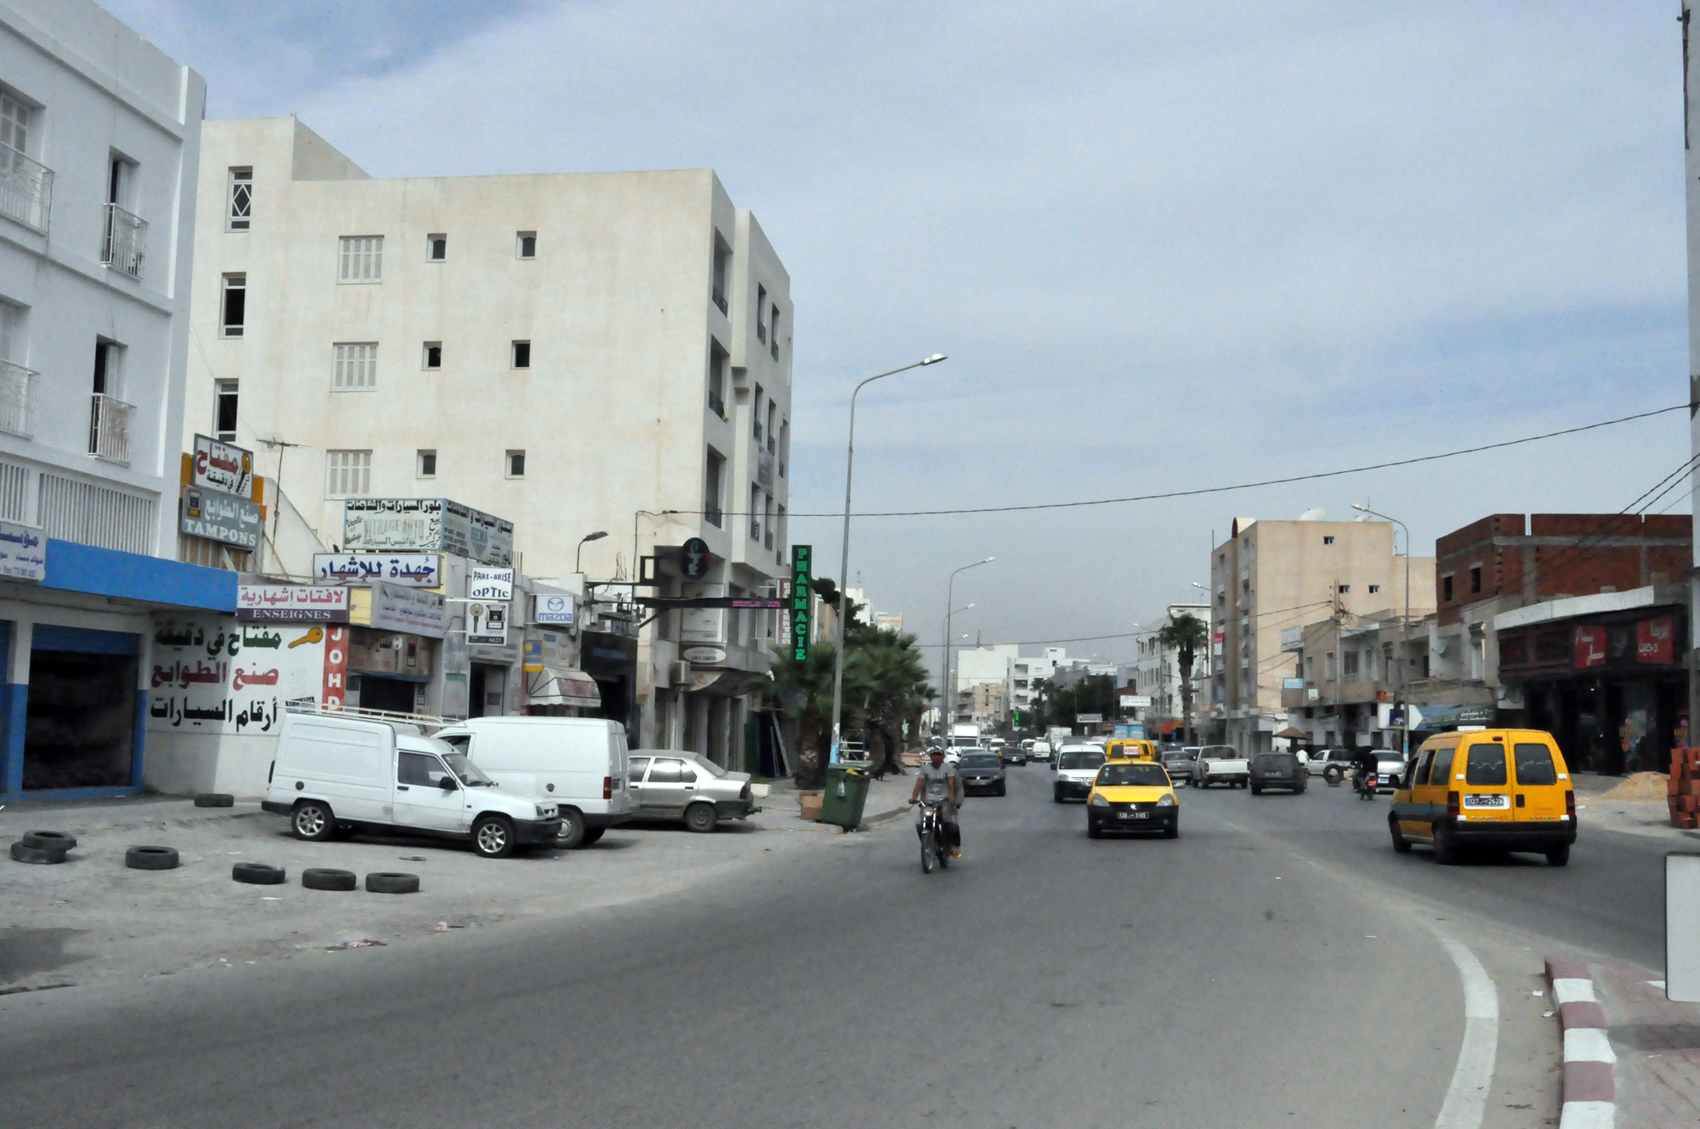 Affaire du viol d’un mineur: La dissolution du conseil municipal de Hammam Sousse